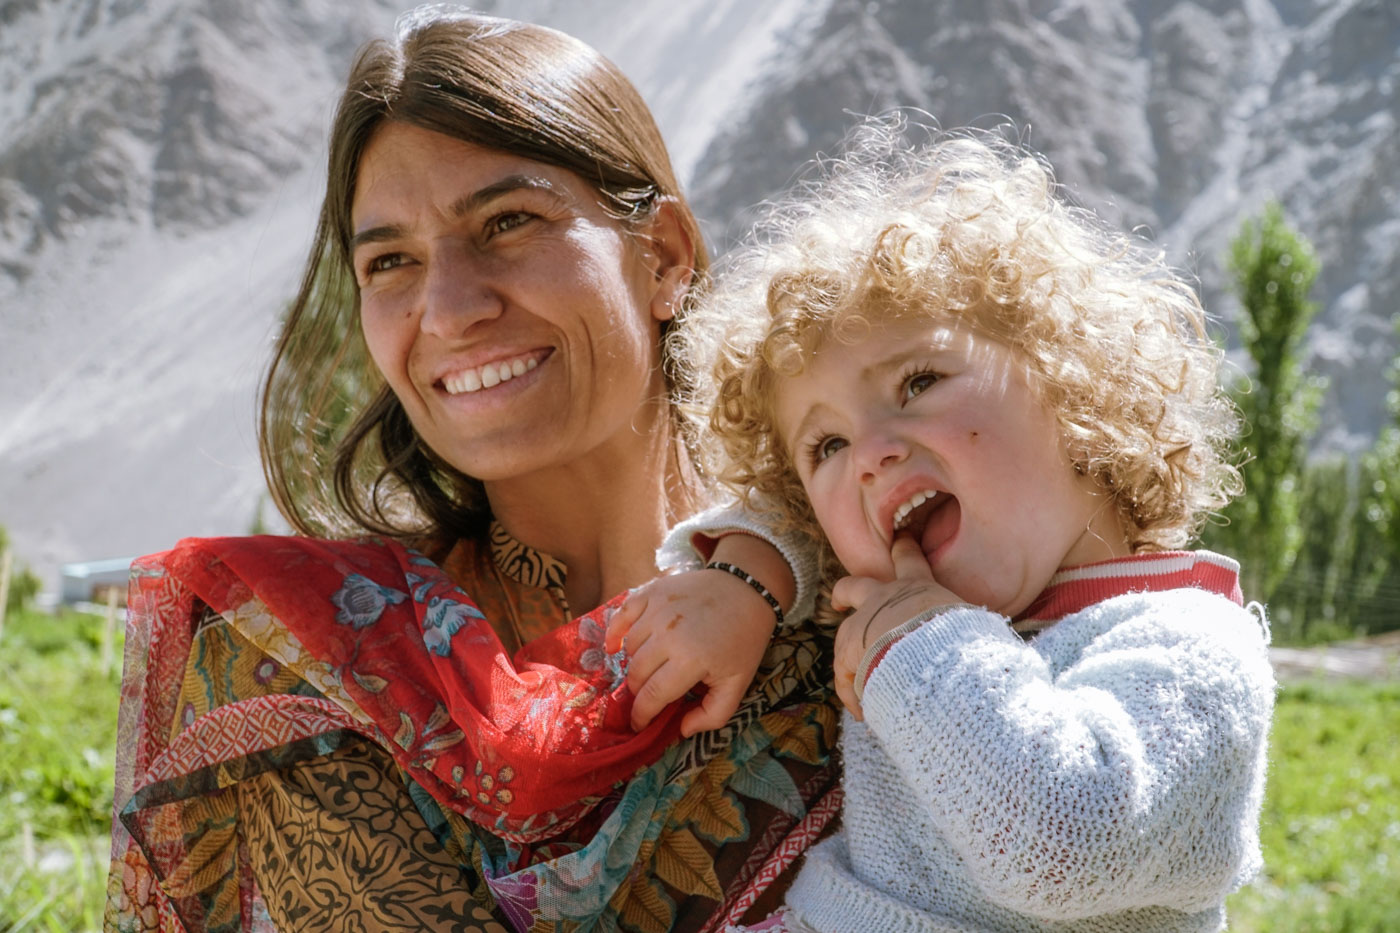 Uma mãe segurando sua filha no colo com roupas coloridas típicas do vale de hunza